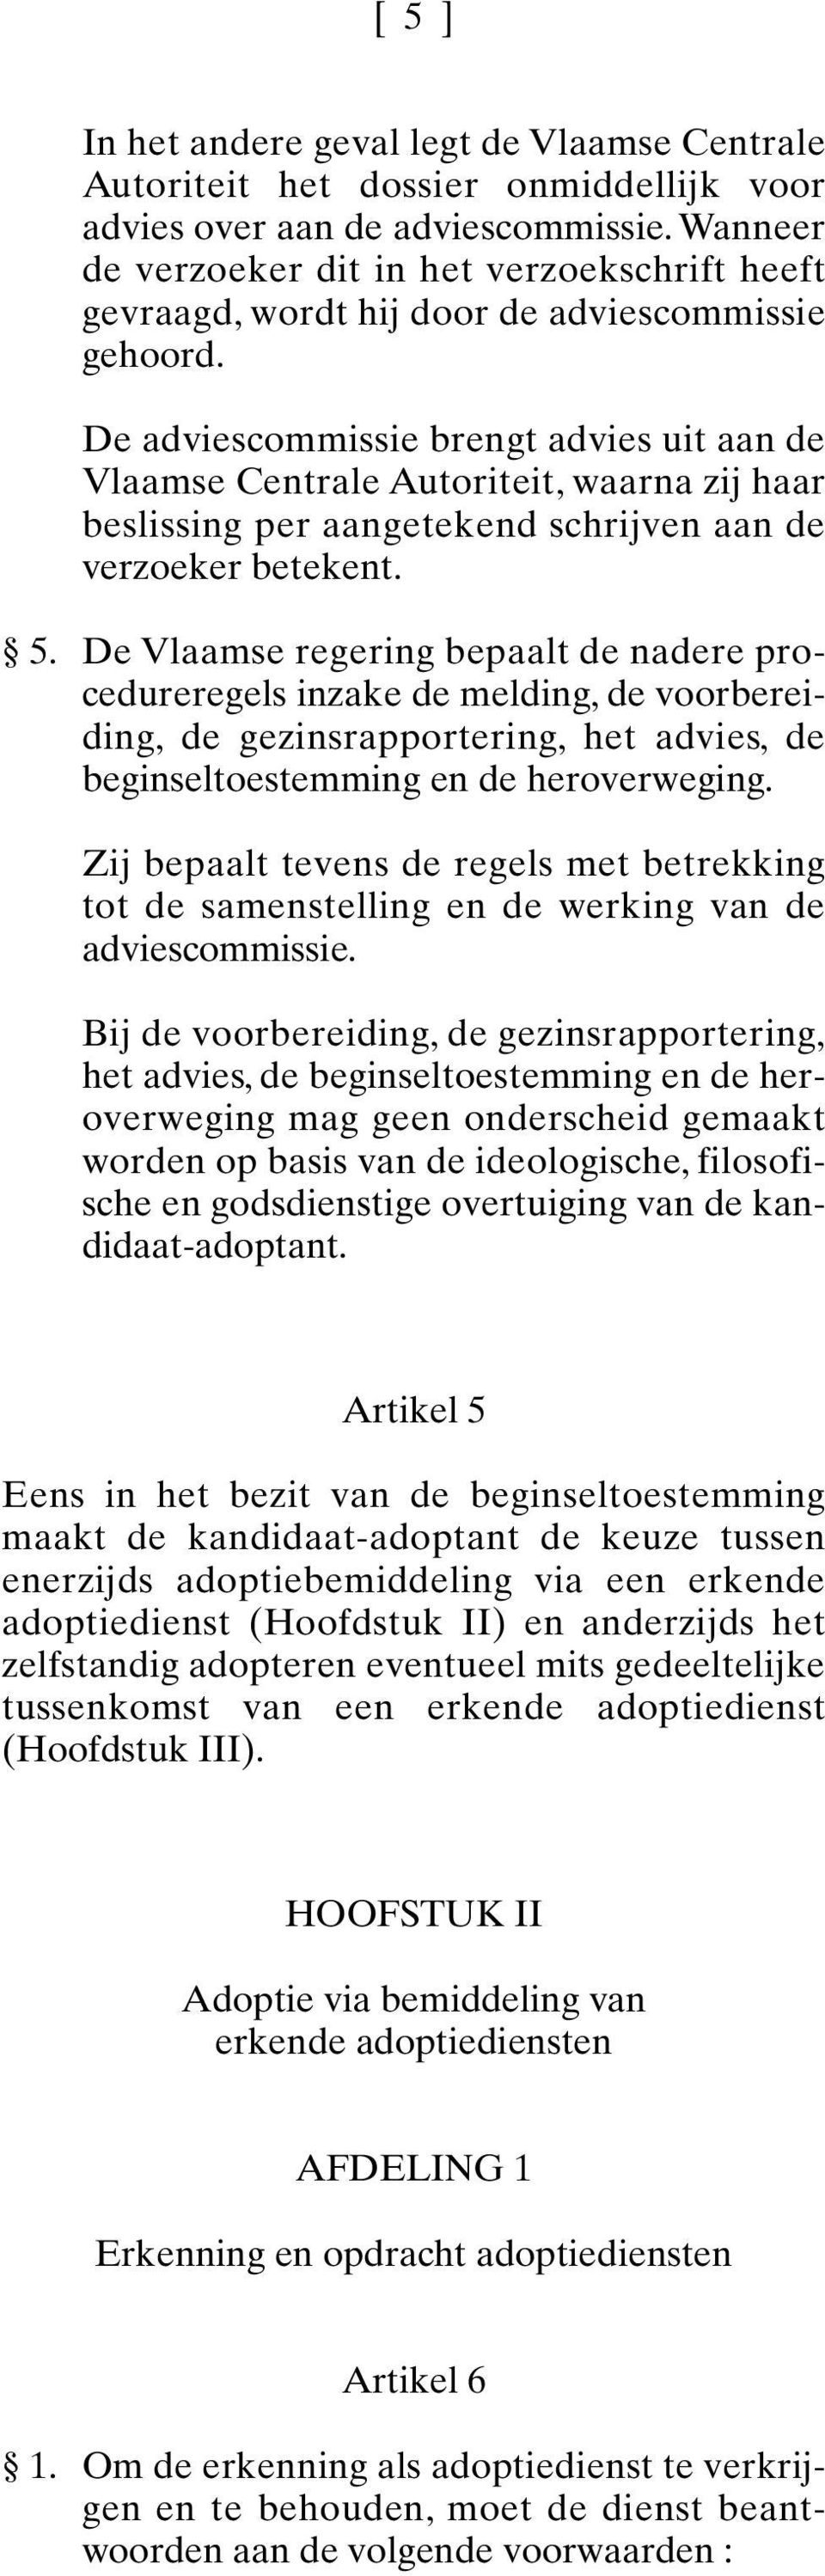 De adviescommissie brengt advies uit aan de Vlaamse Centrale Autoriteit, waarna zij haar beslissing per aangetekend schrijven aan de verzoeker betekent. 5.